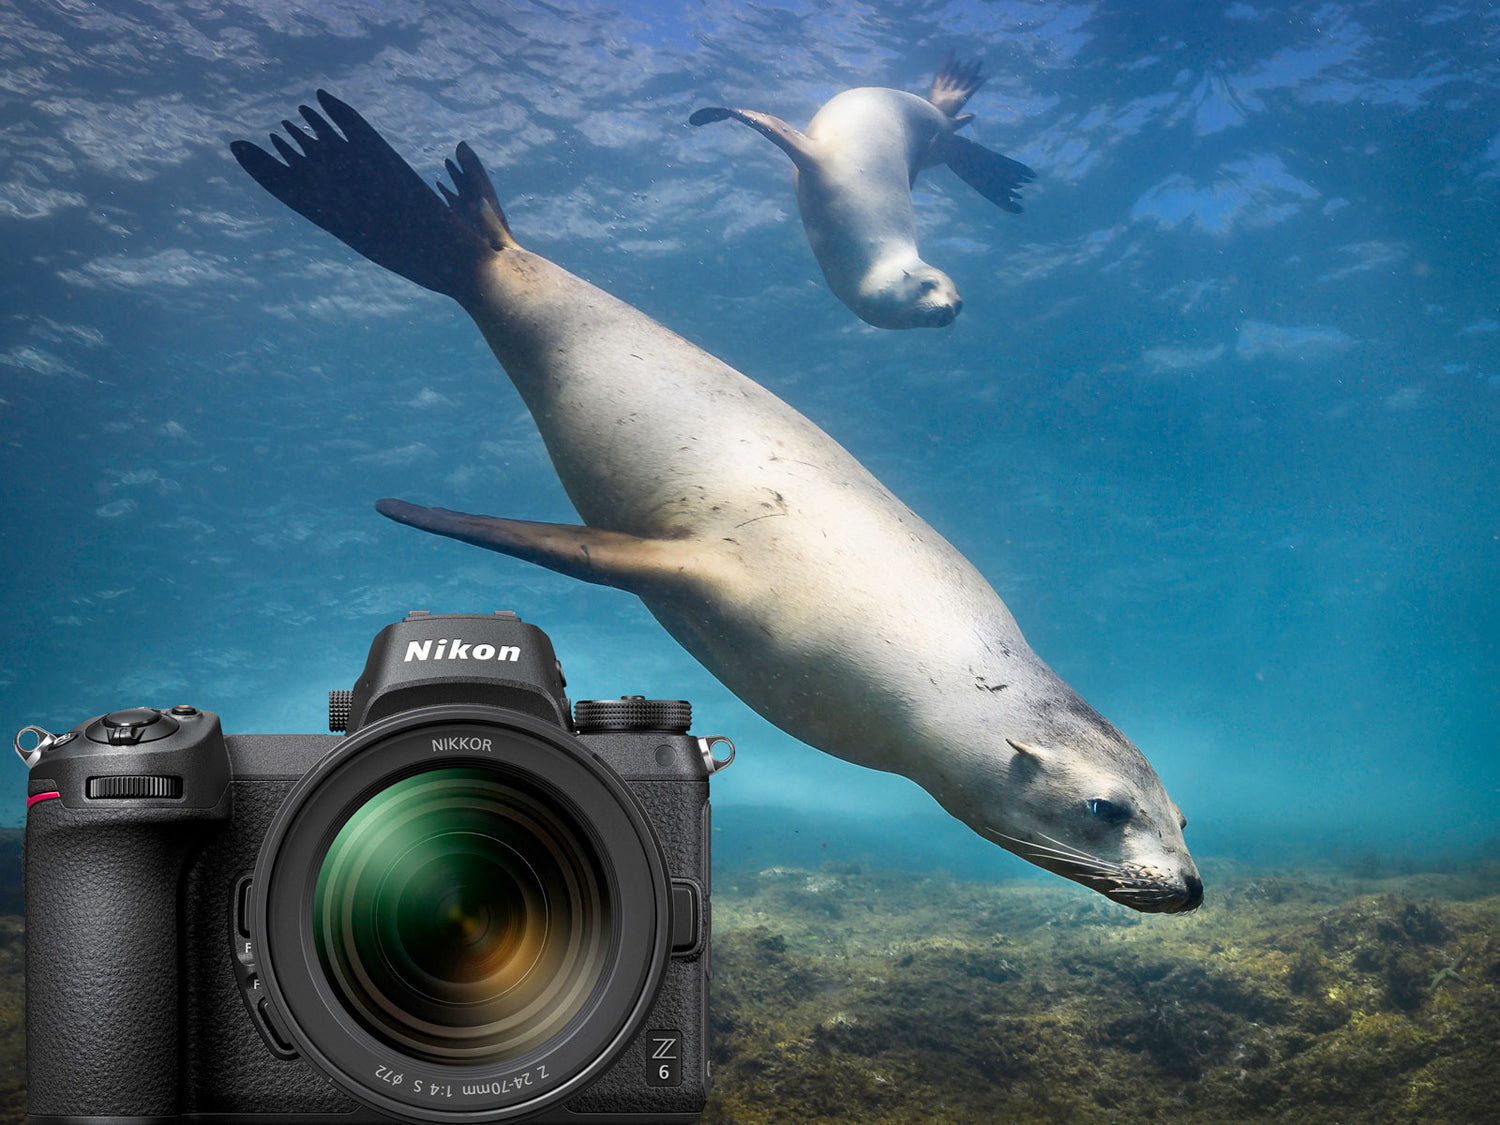 Cousteau's Aquarium | Sea of Cortez with the Nikon Z6